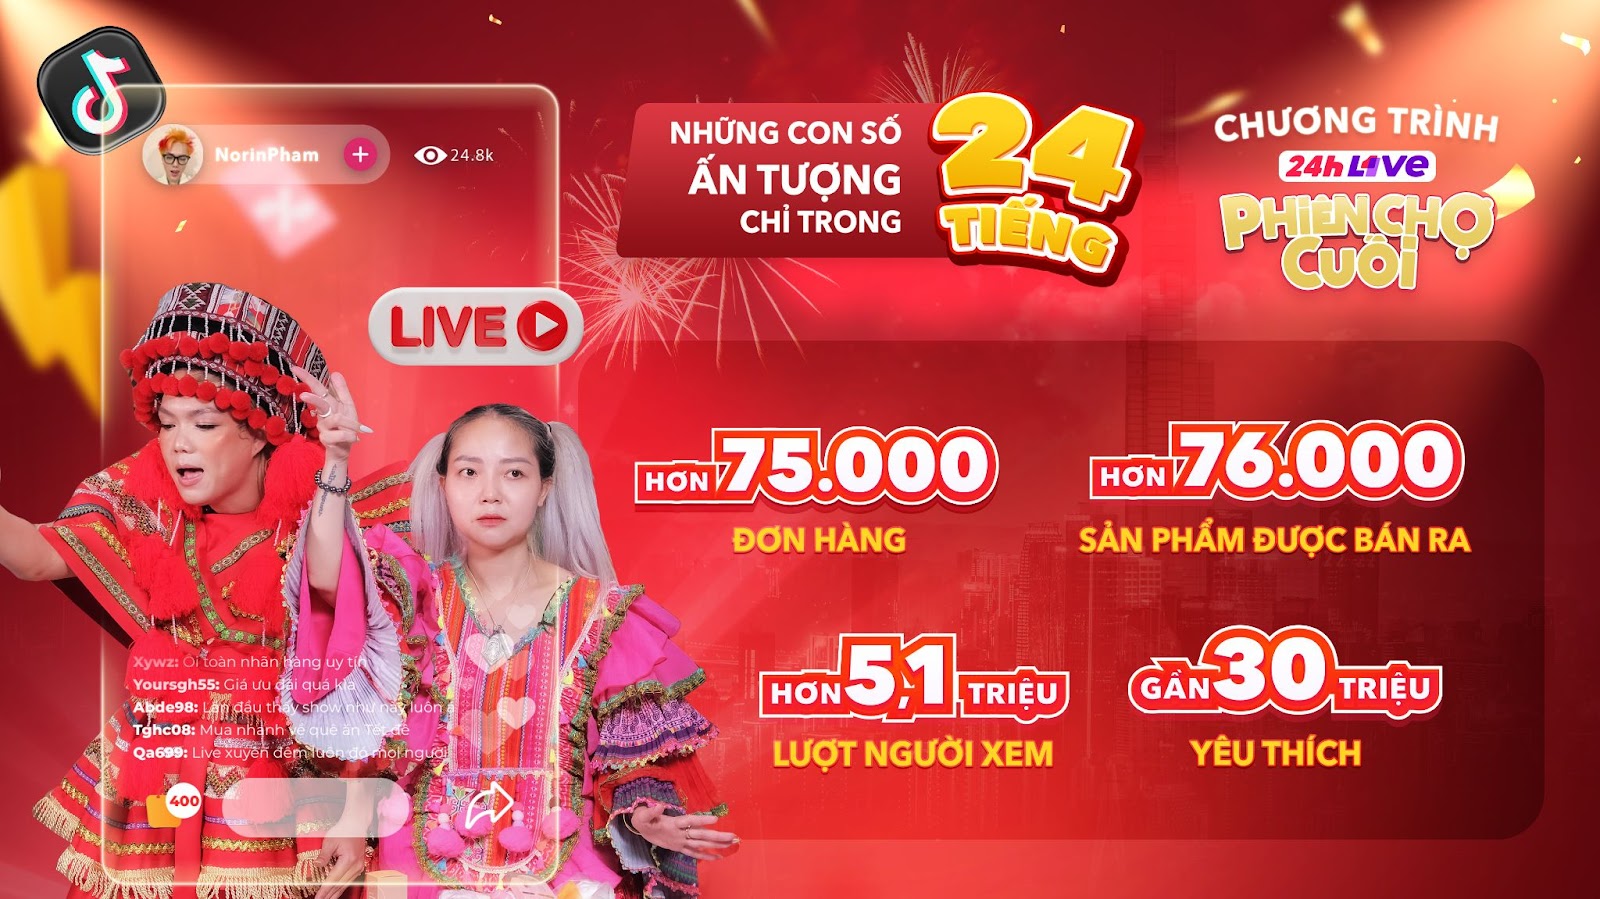 Cách đây không lâu, cơn sốt mua hàng trên livestream TikTok - Show “24h Live Phiên Chợ Cuối” kéo dài liên tục 24 tiếng do chính YeaH1UP sản xuất đã xác lập nhiều kỷ lục trong bán hàng online tại Việt Nam